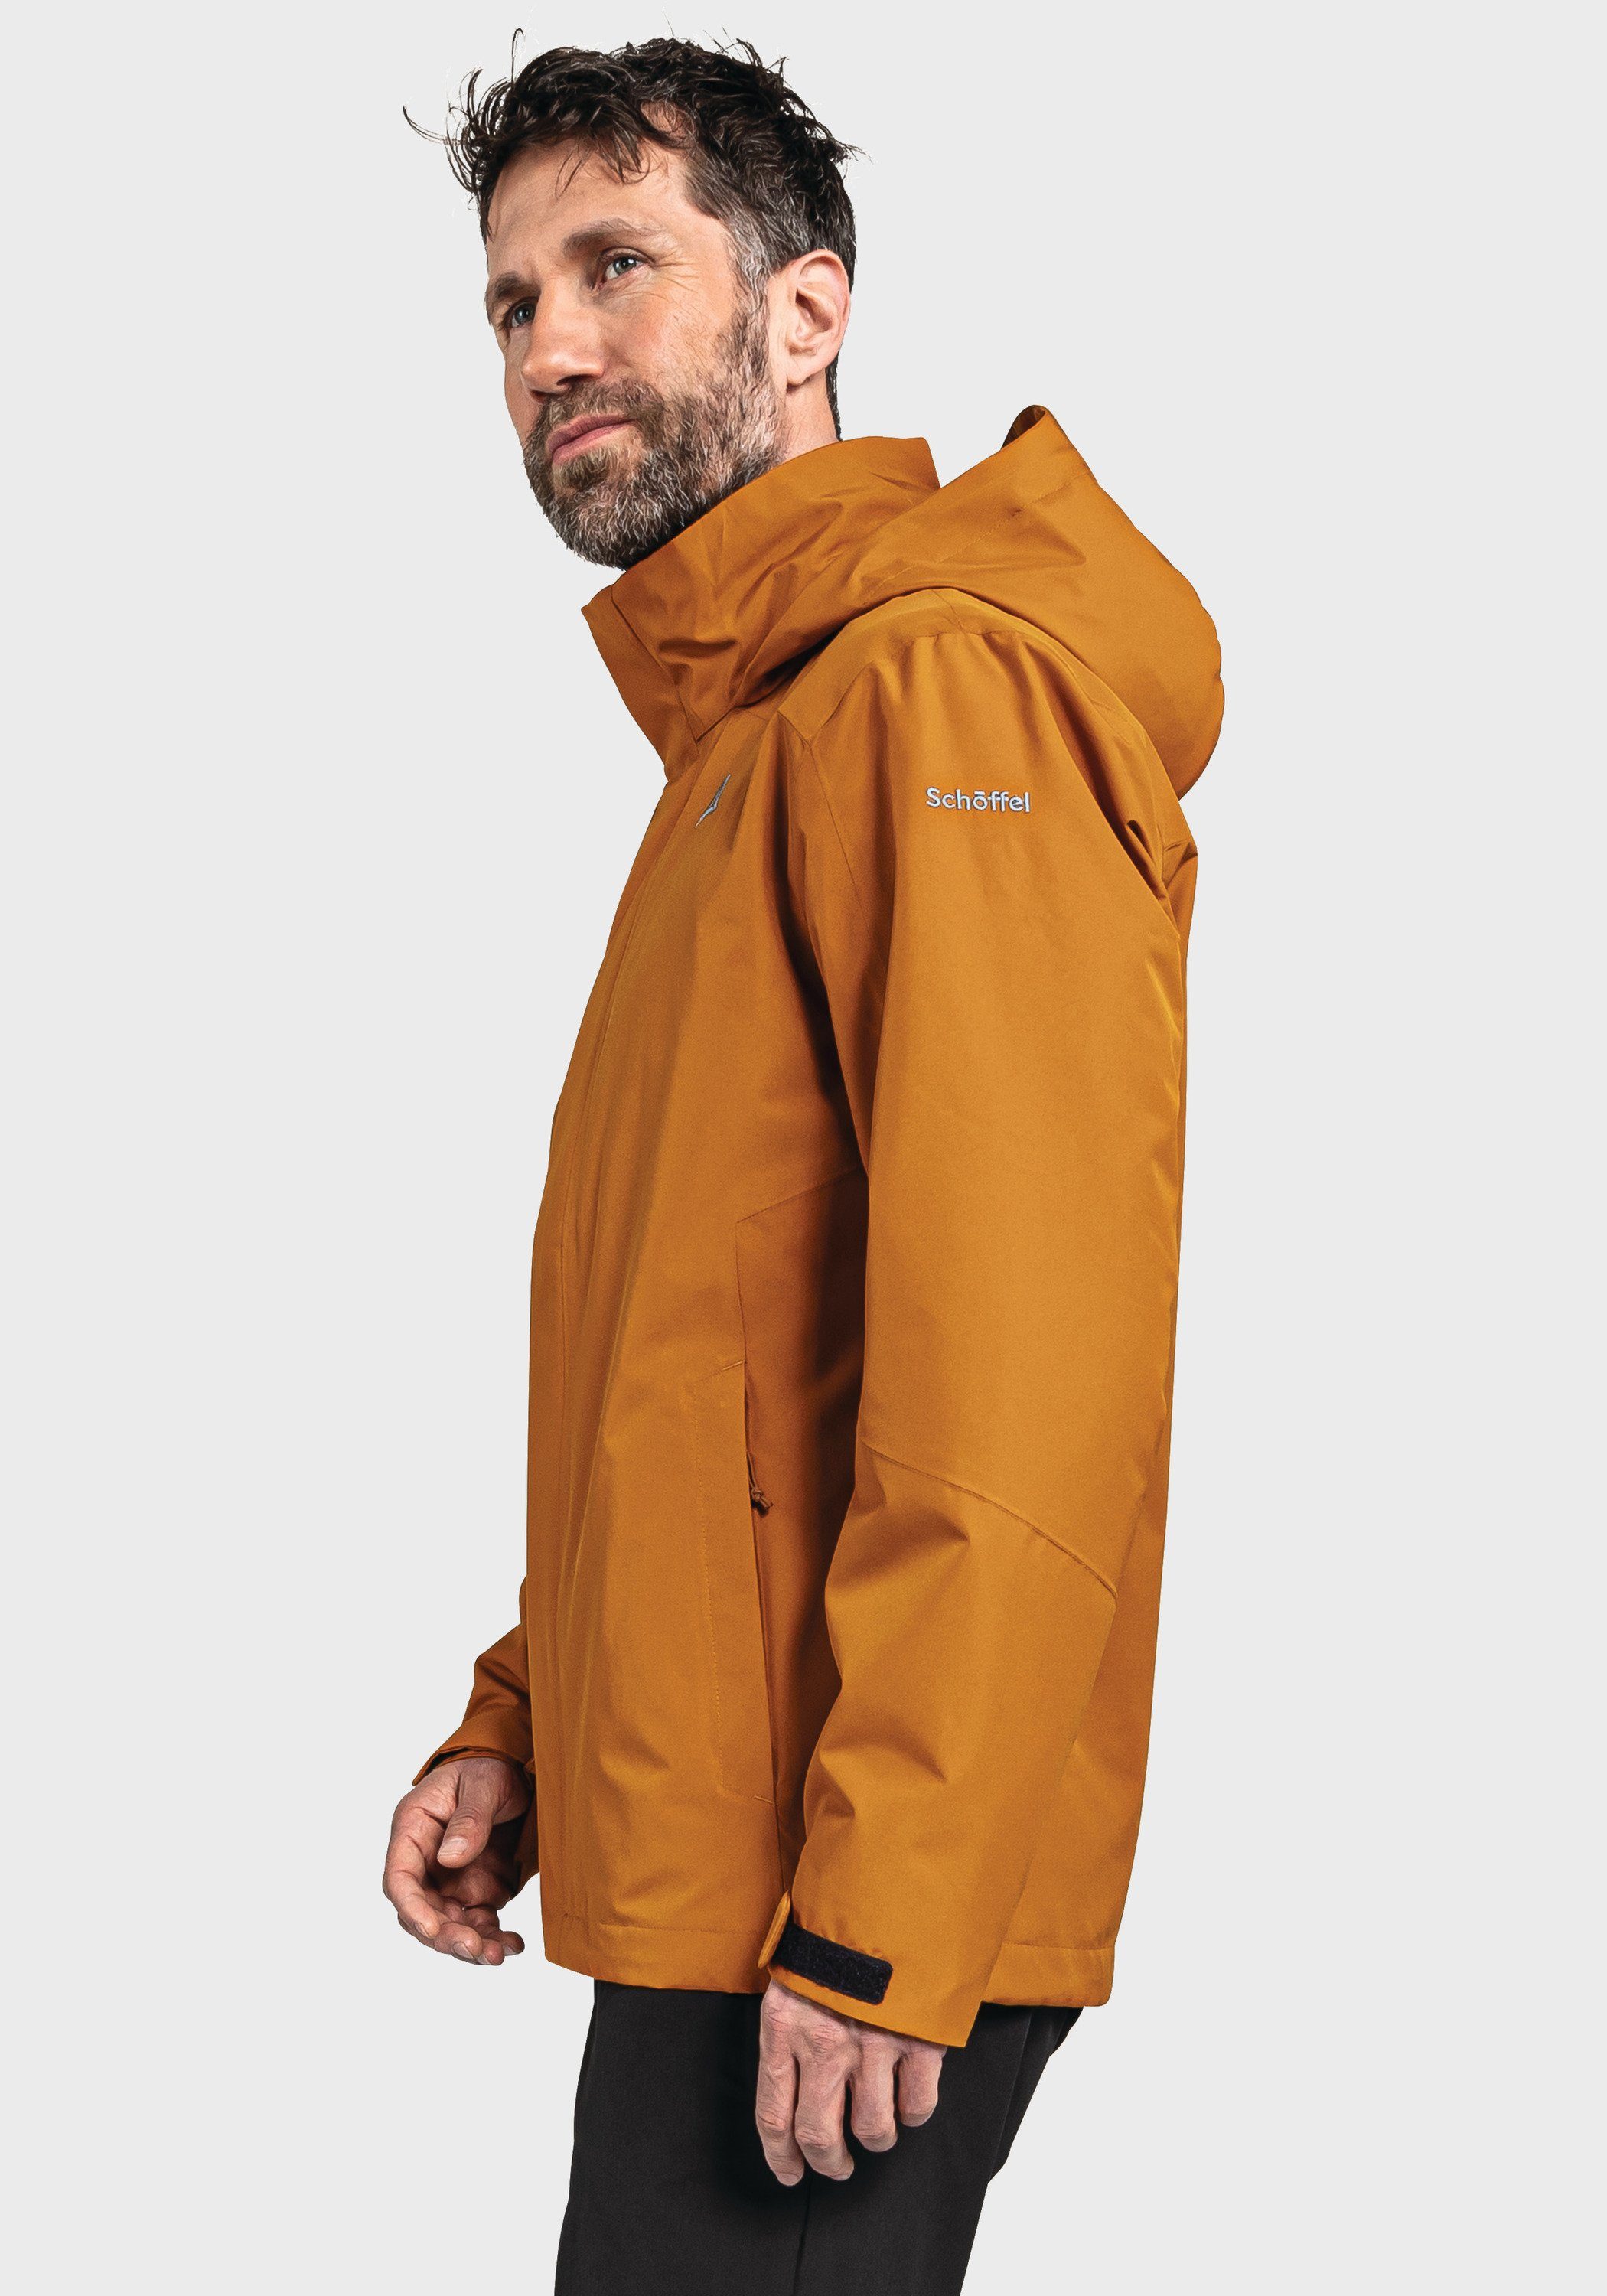 Jacket M Doppeljacke orange Partinello Schöffel 3in1